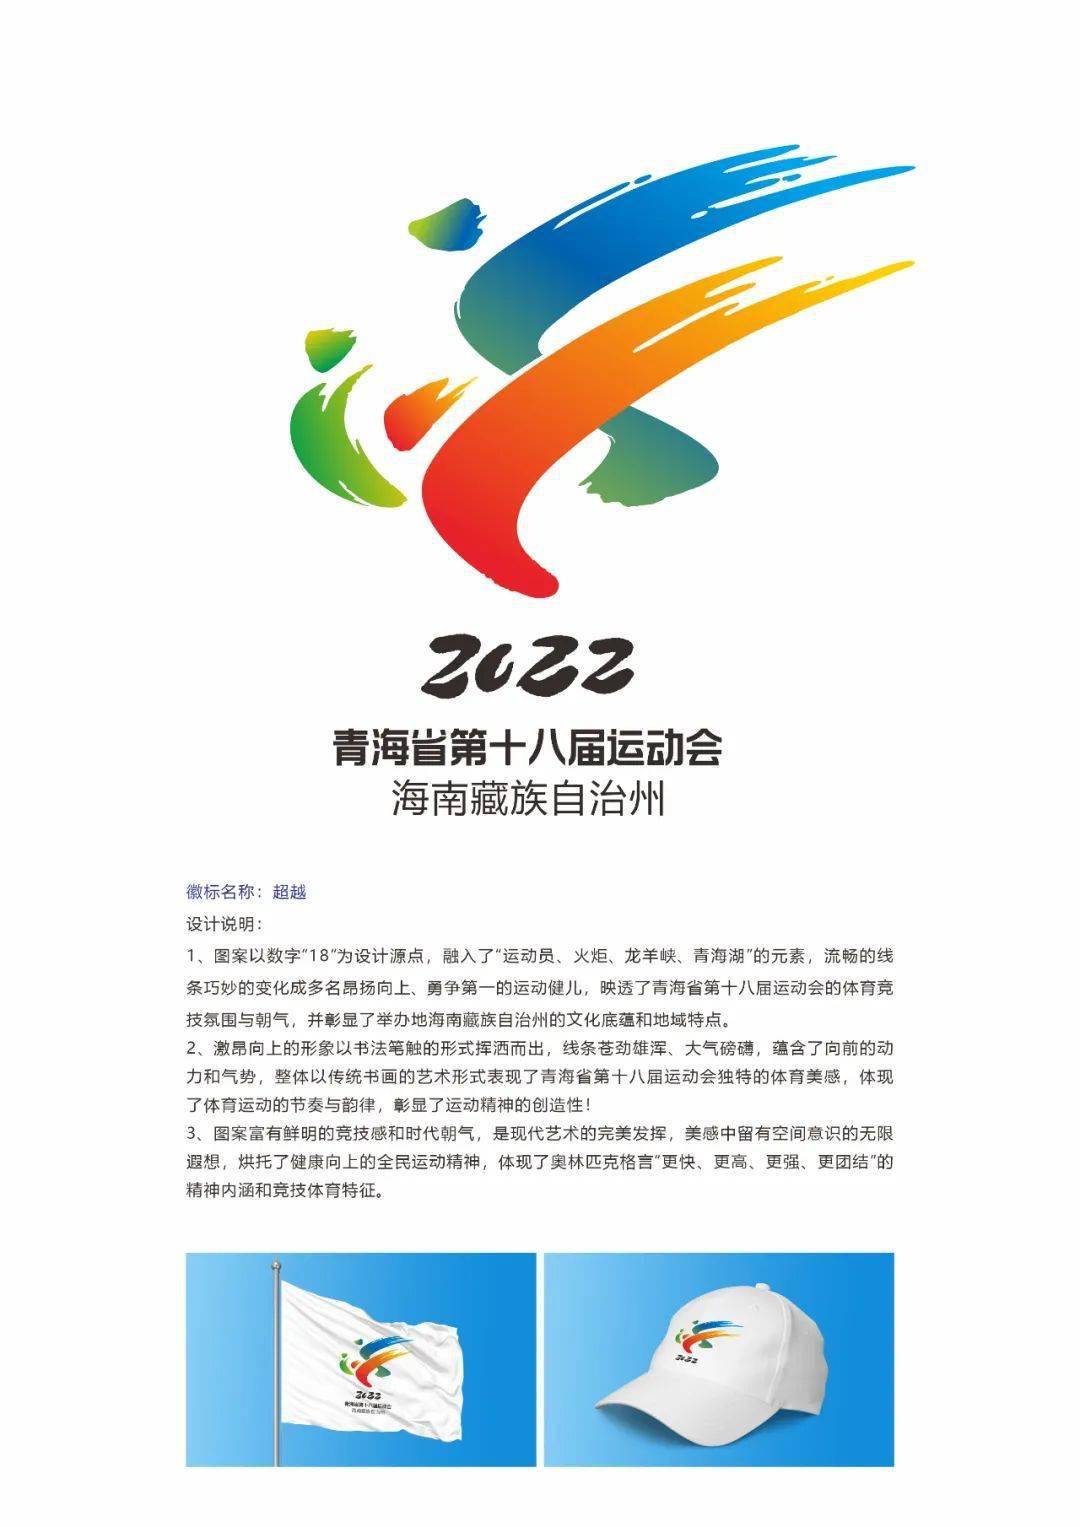 省运会专栏丨第十八届省运会会徽设计展示一